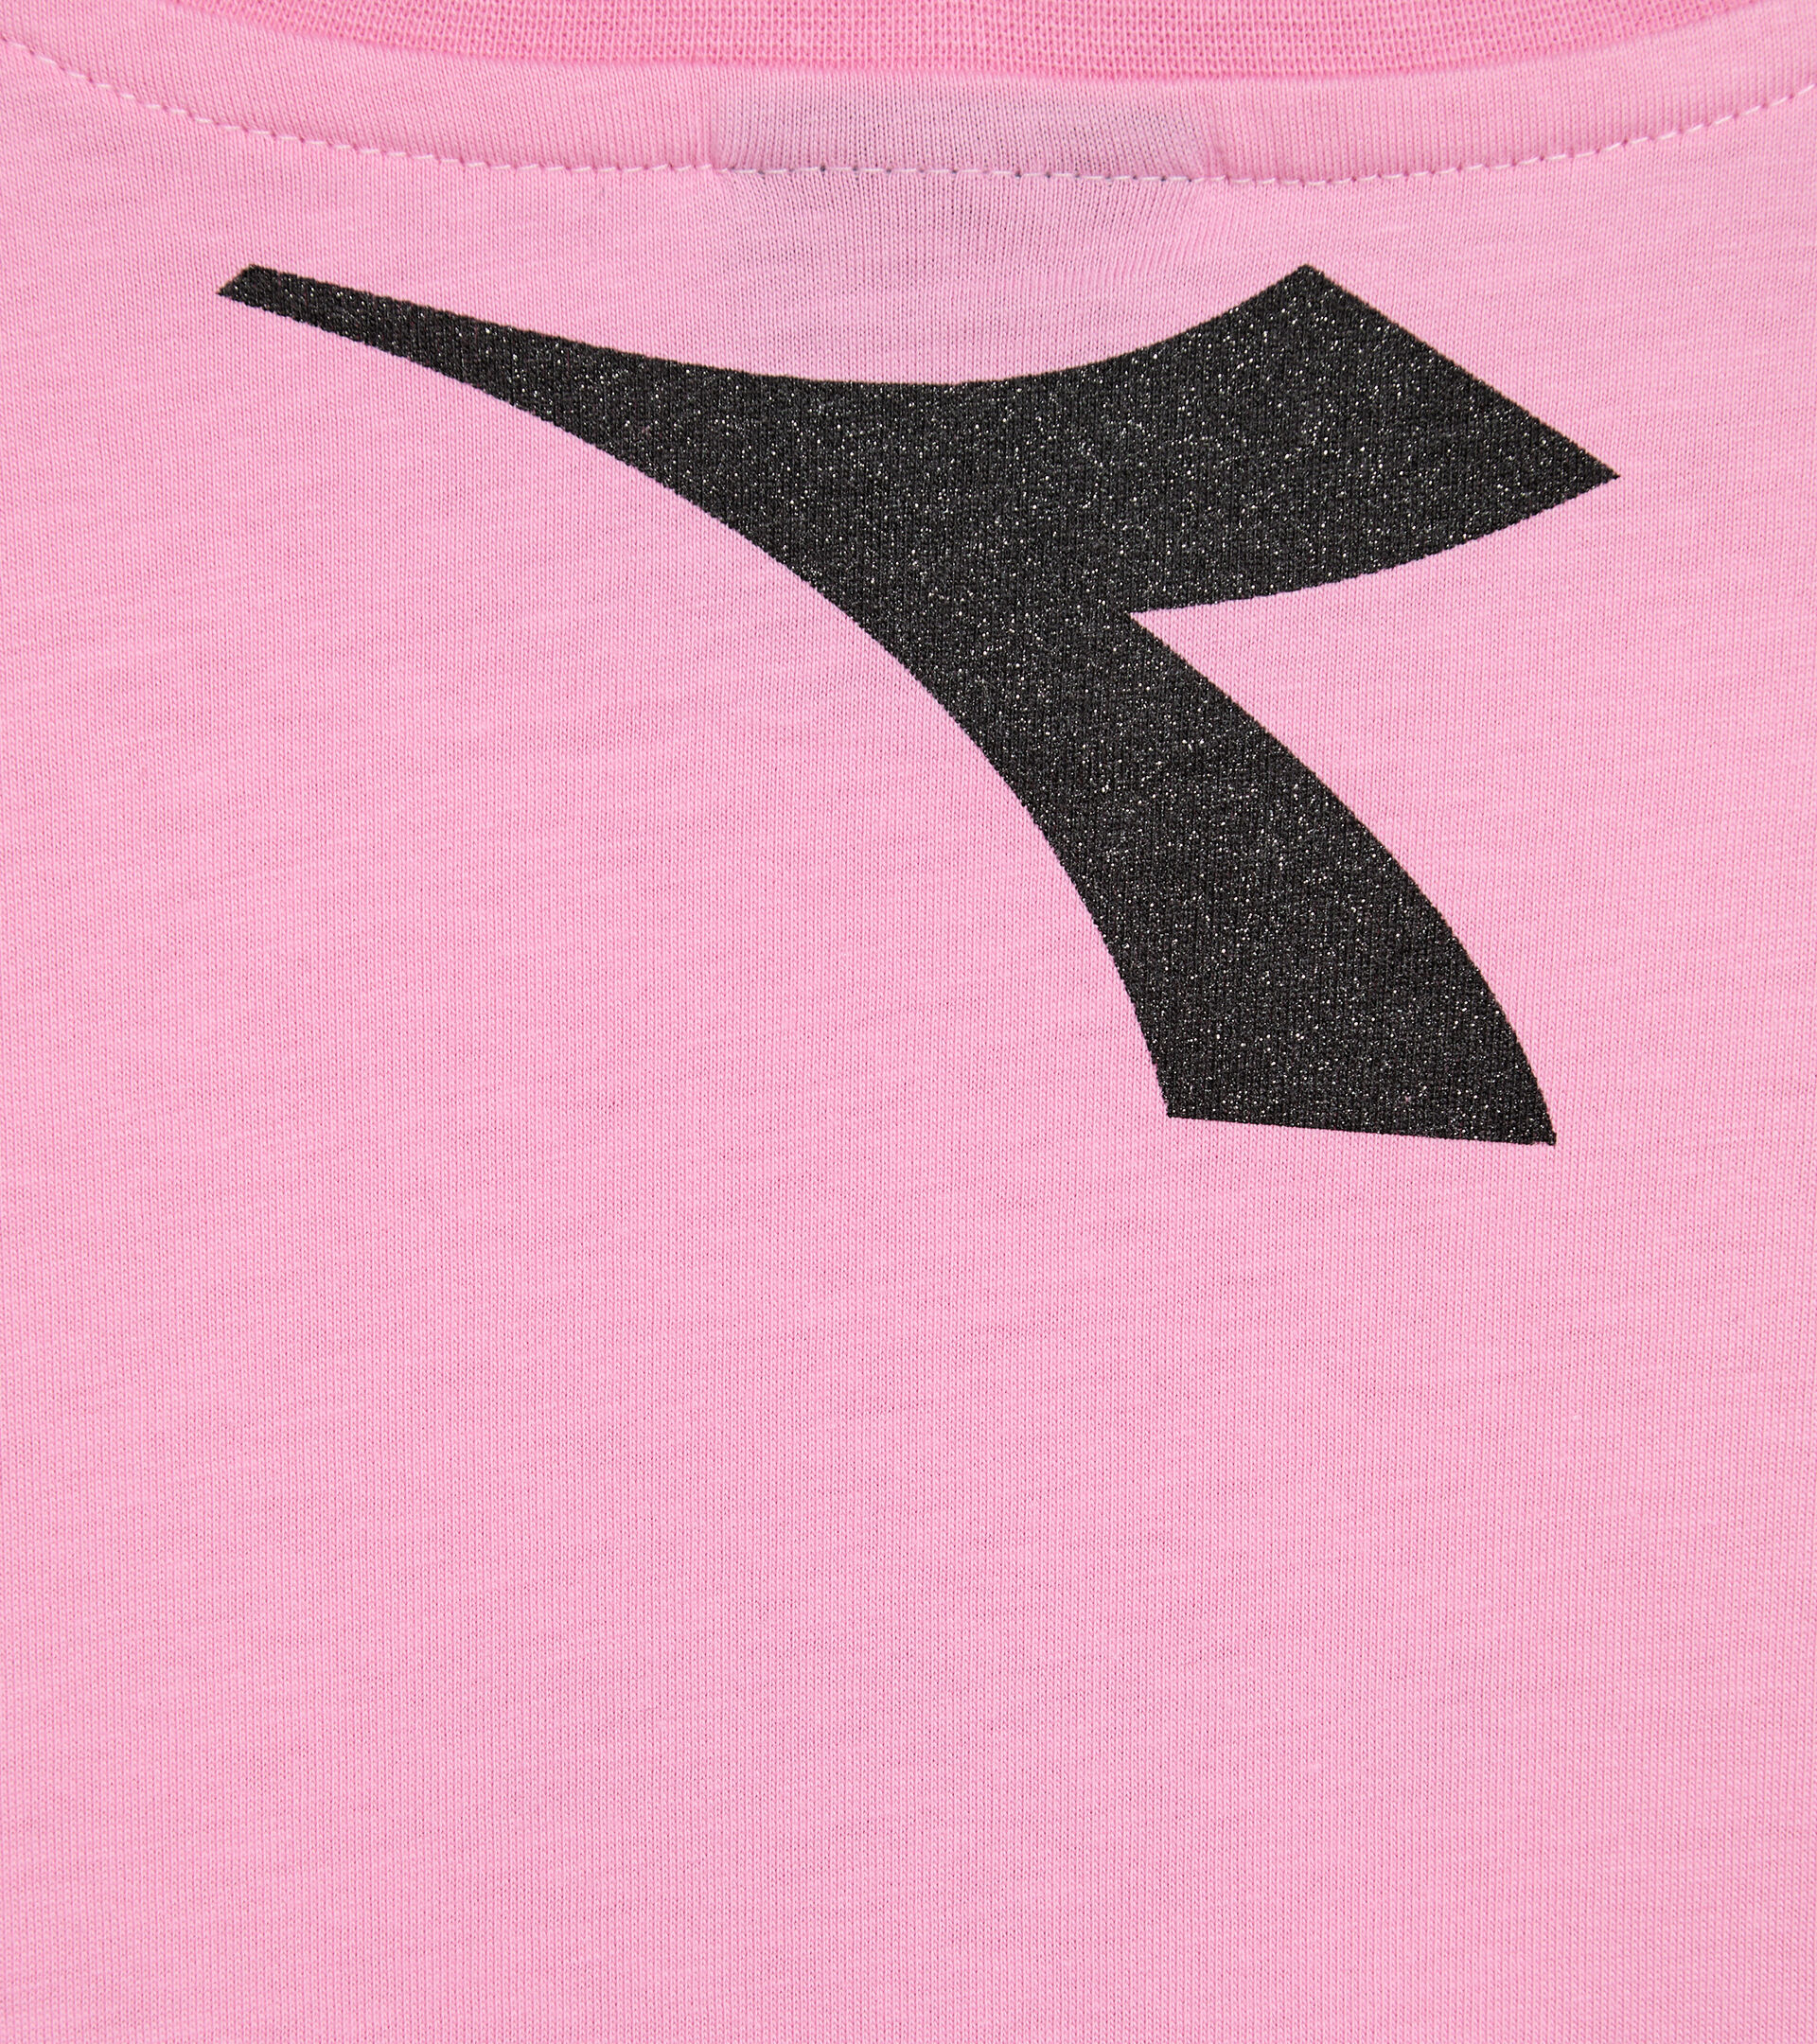 T-Shirt mit Logo - Mädchen JG.T-SHIRT D KAMMMUSCHEL ROSE - Diadora